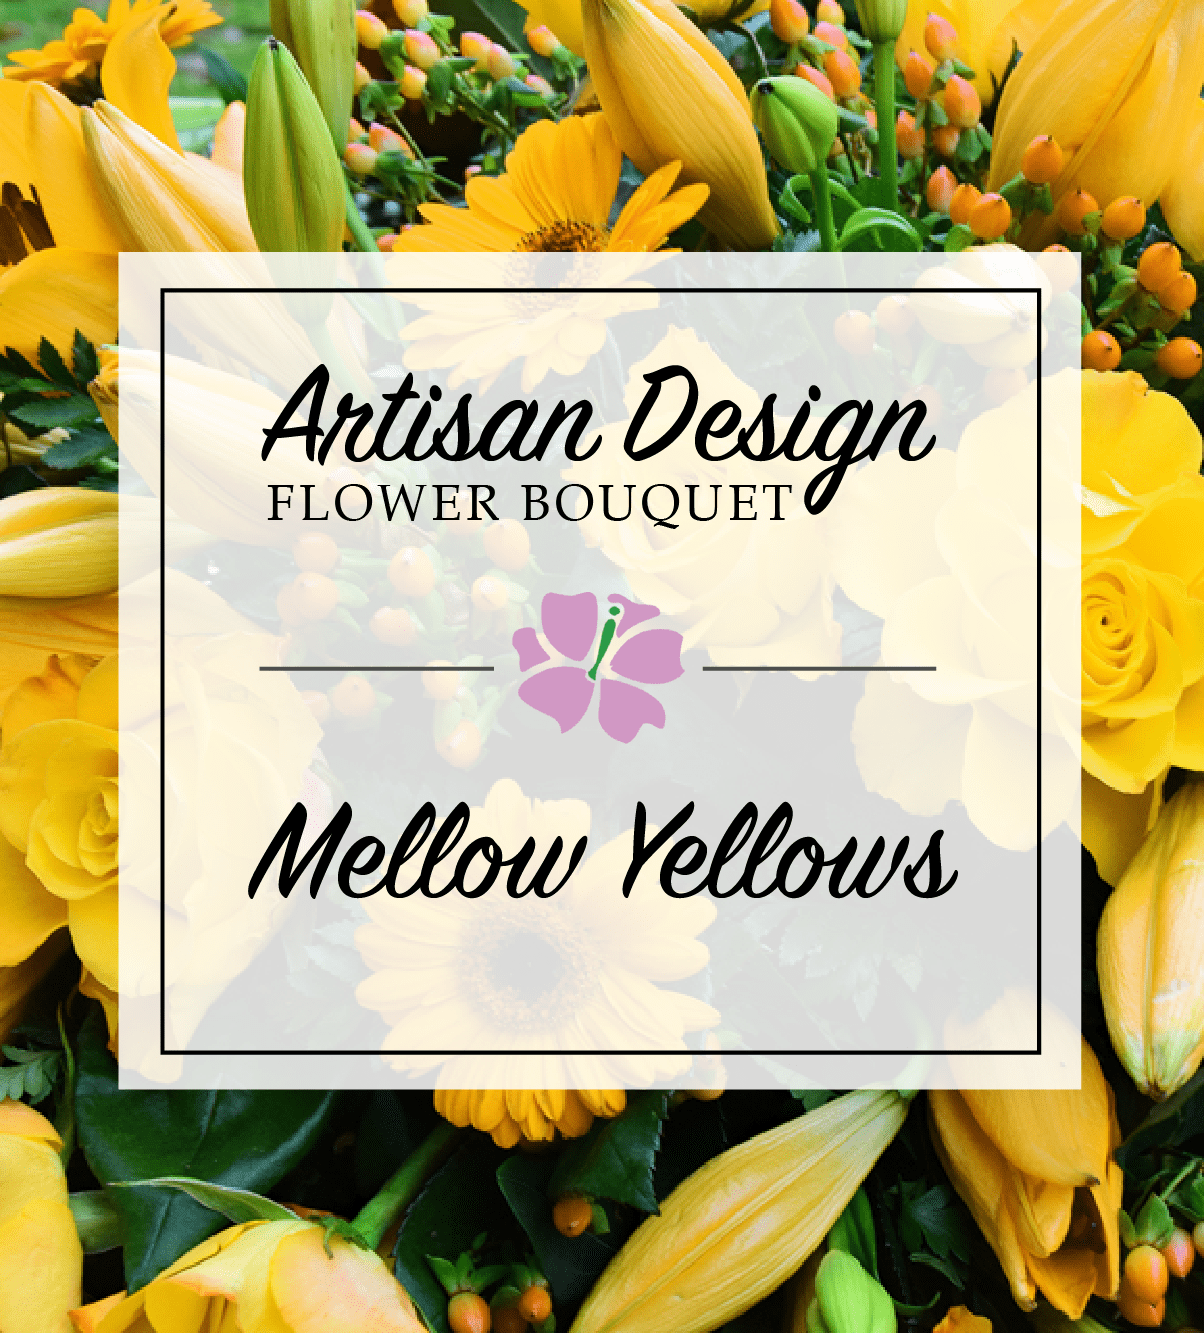 Artist's Design: Mellow Yellows